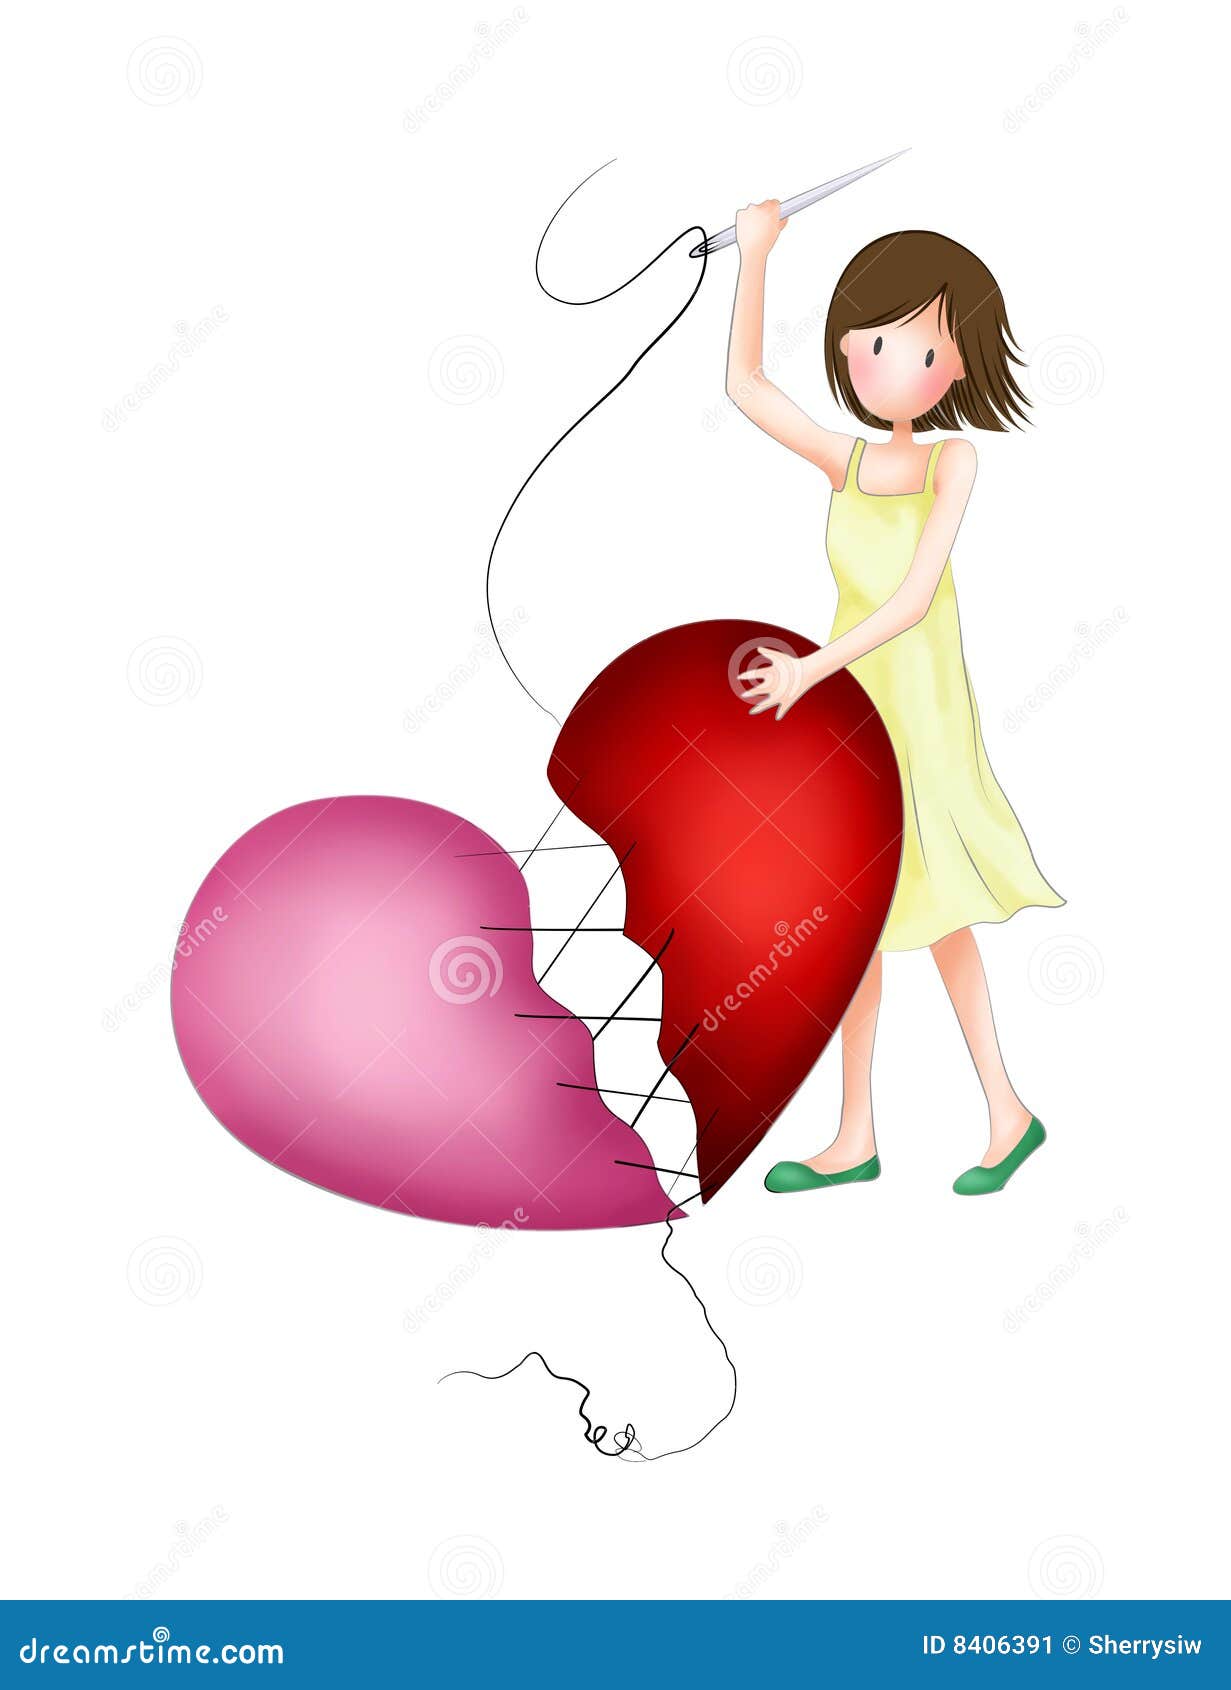 Broken heart stock illustration. Illustration of relationship ...